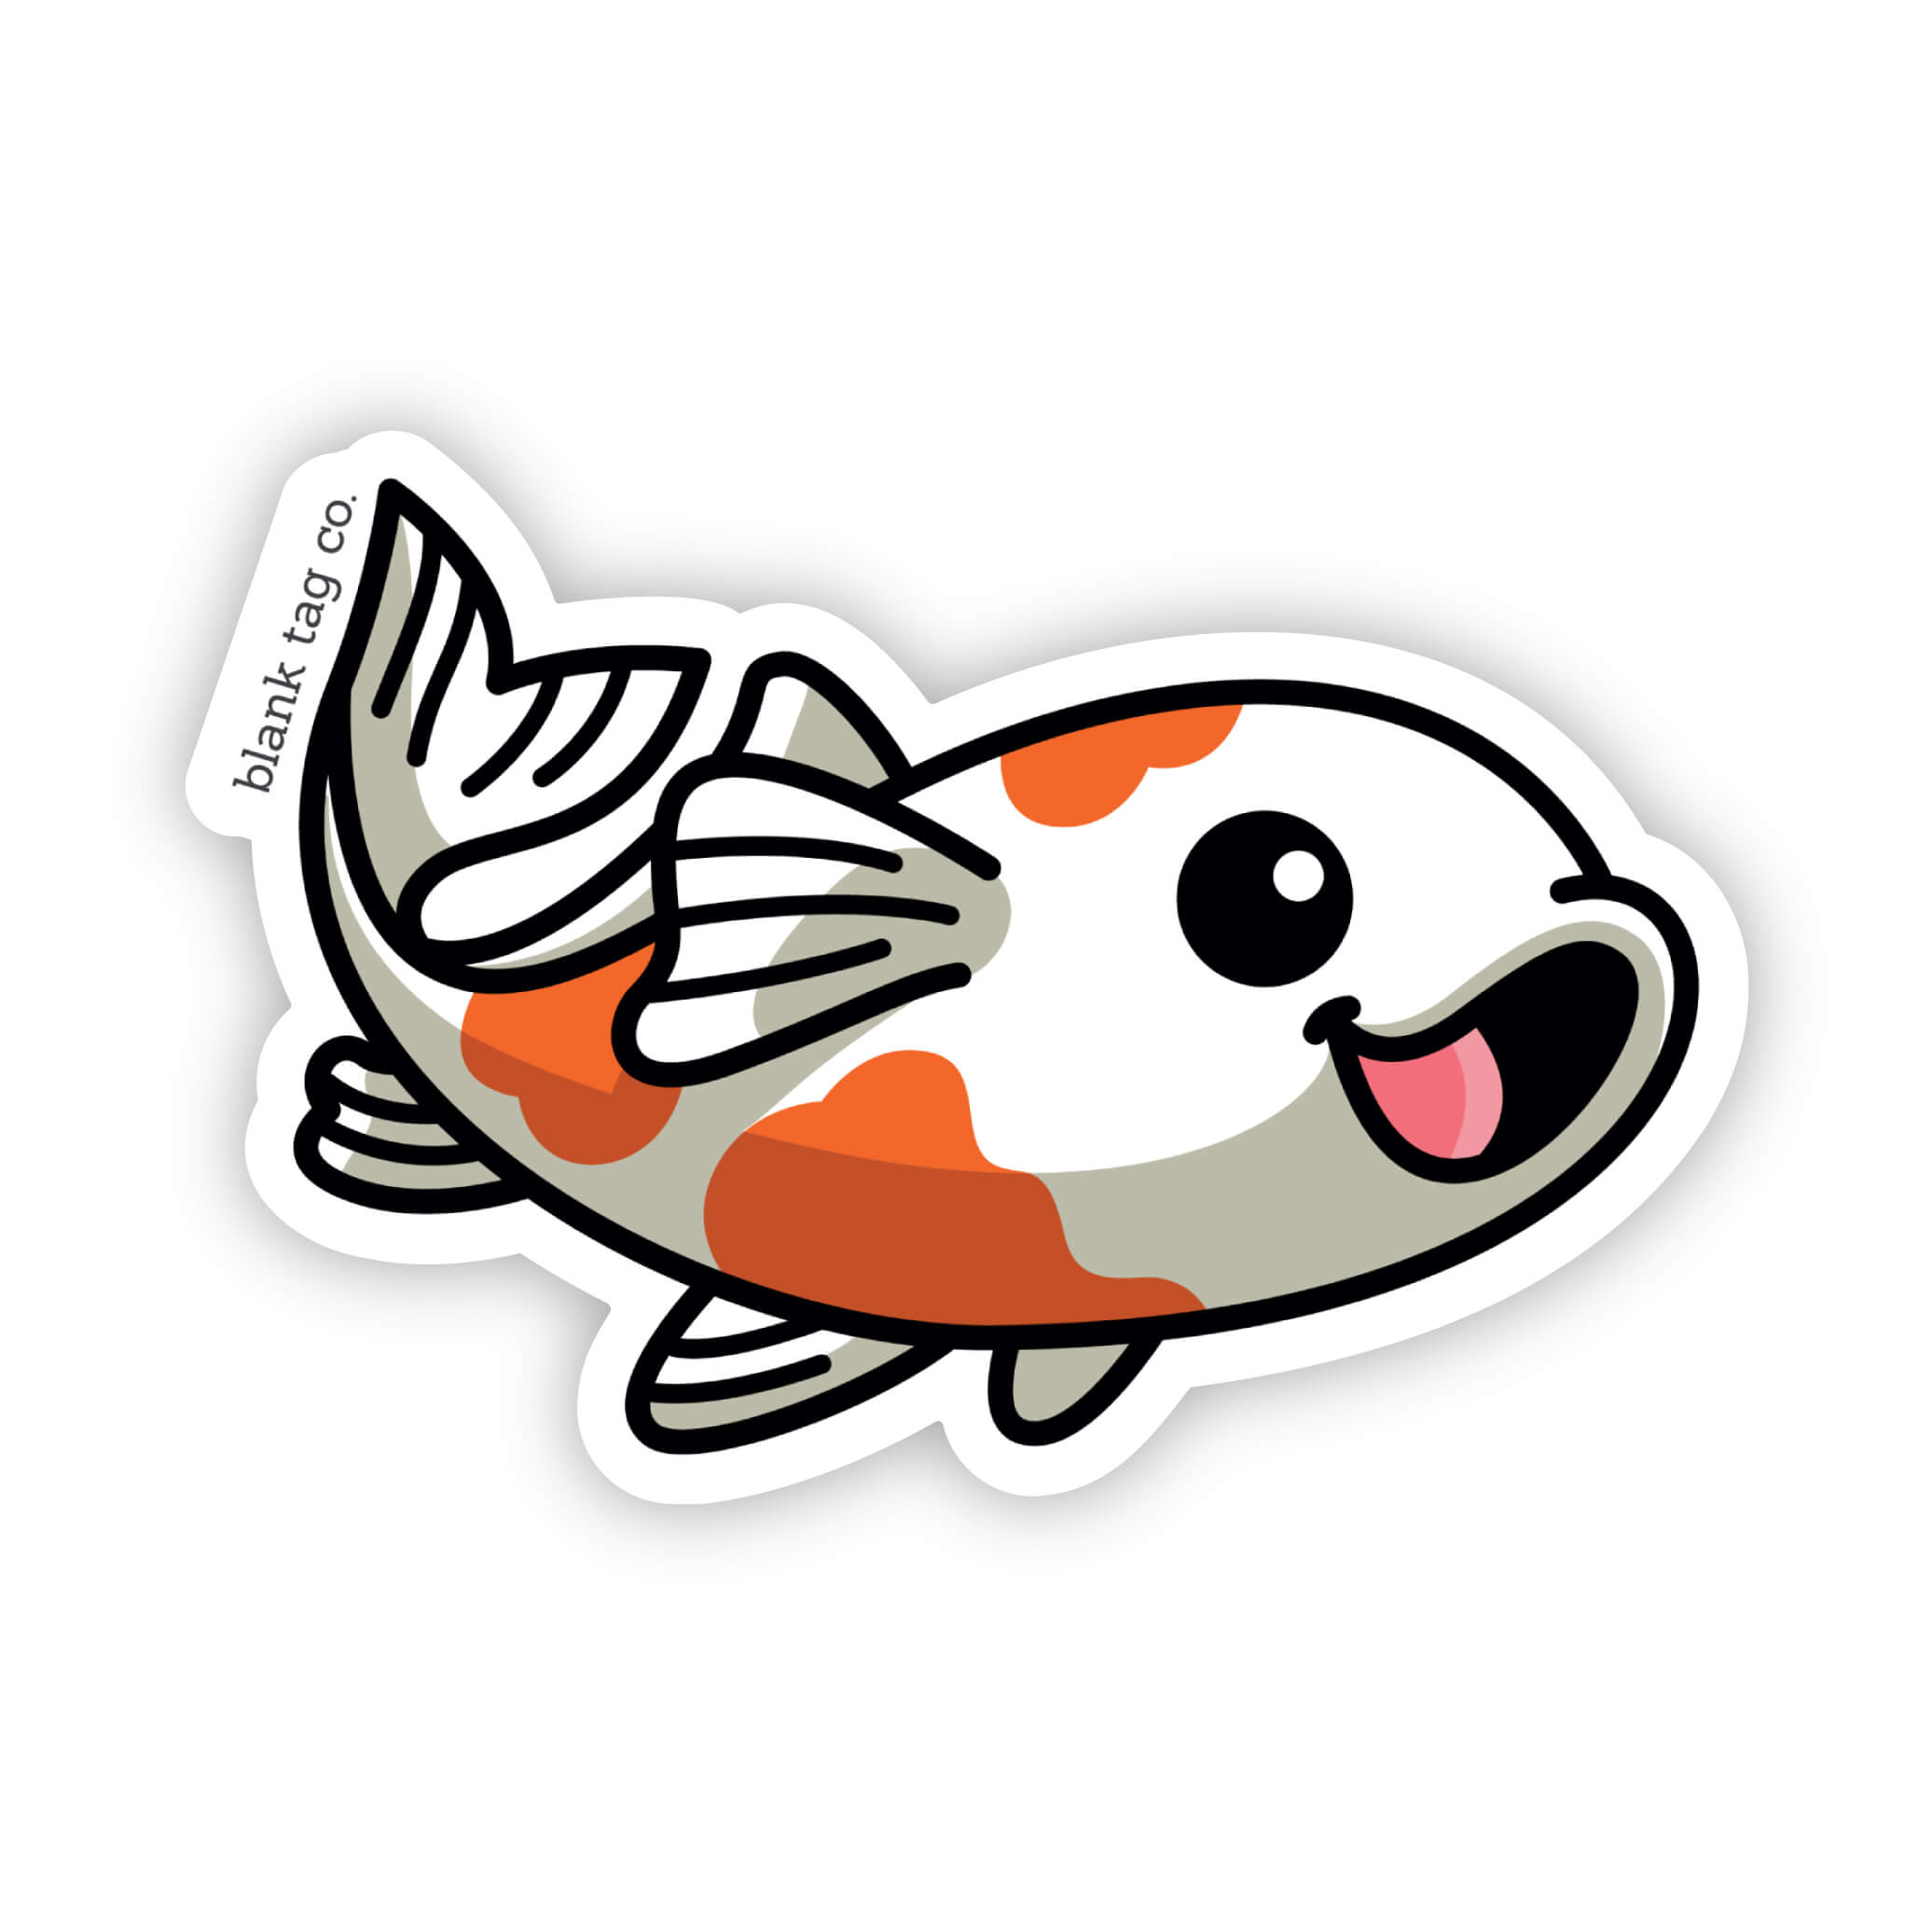 The Koi Fish Sticker